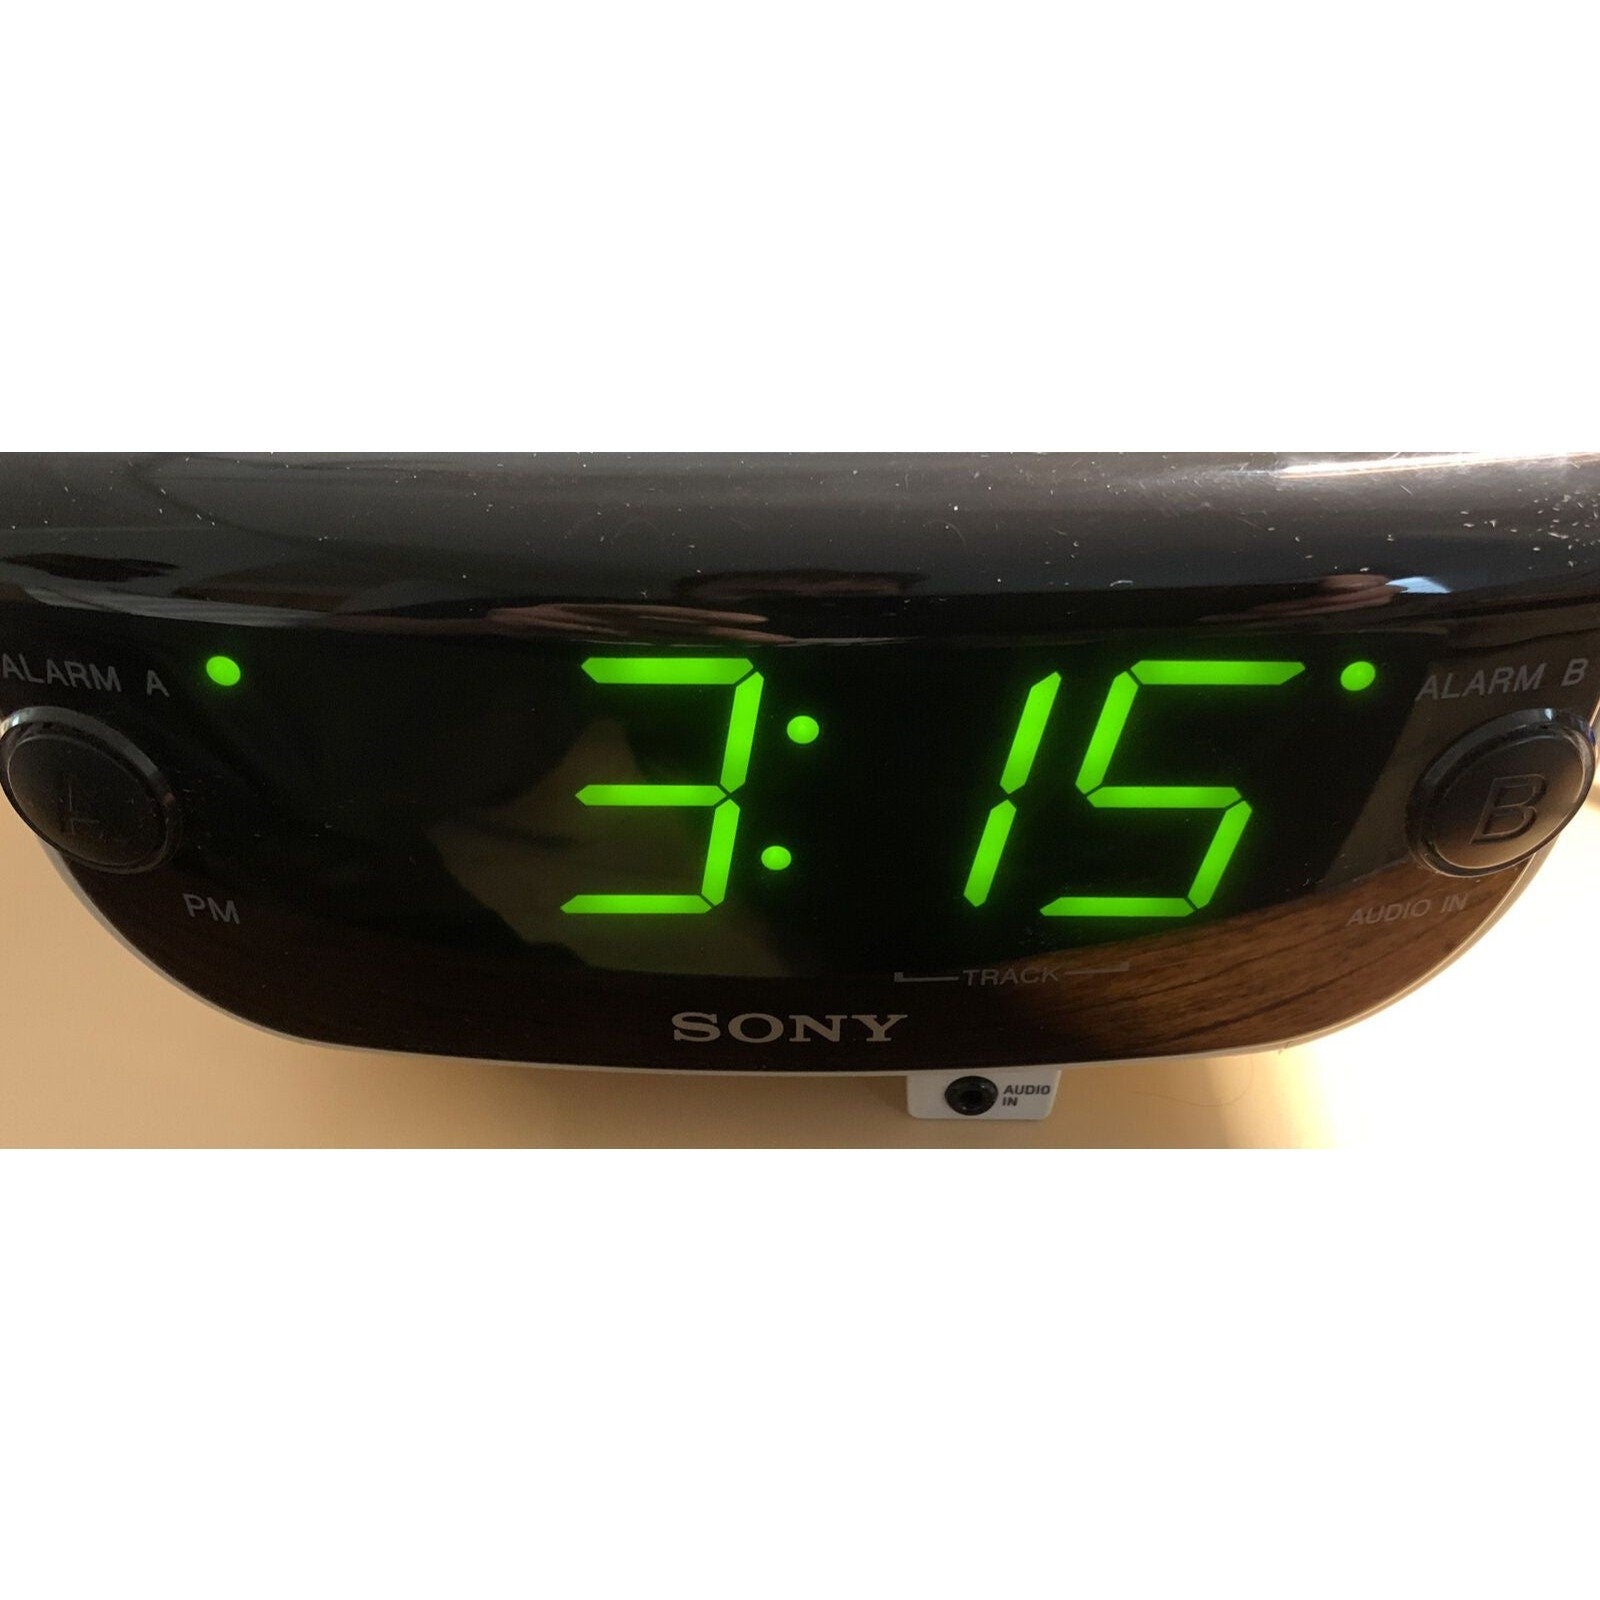 Sony DreamMachine AM/FM Alarm Clock Radio ICF-CD815